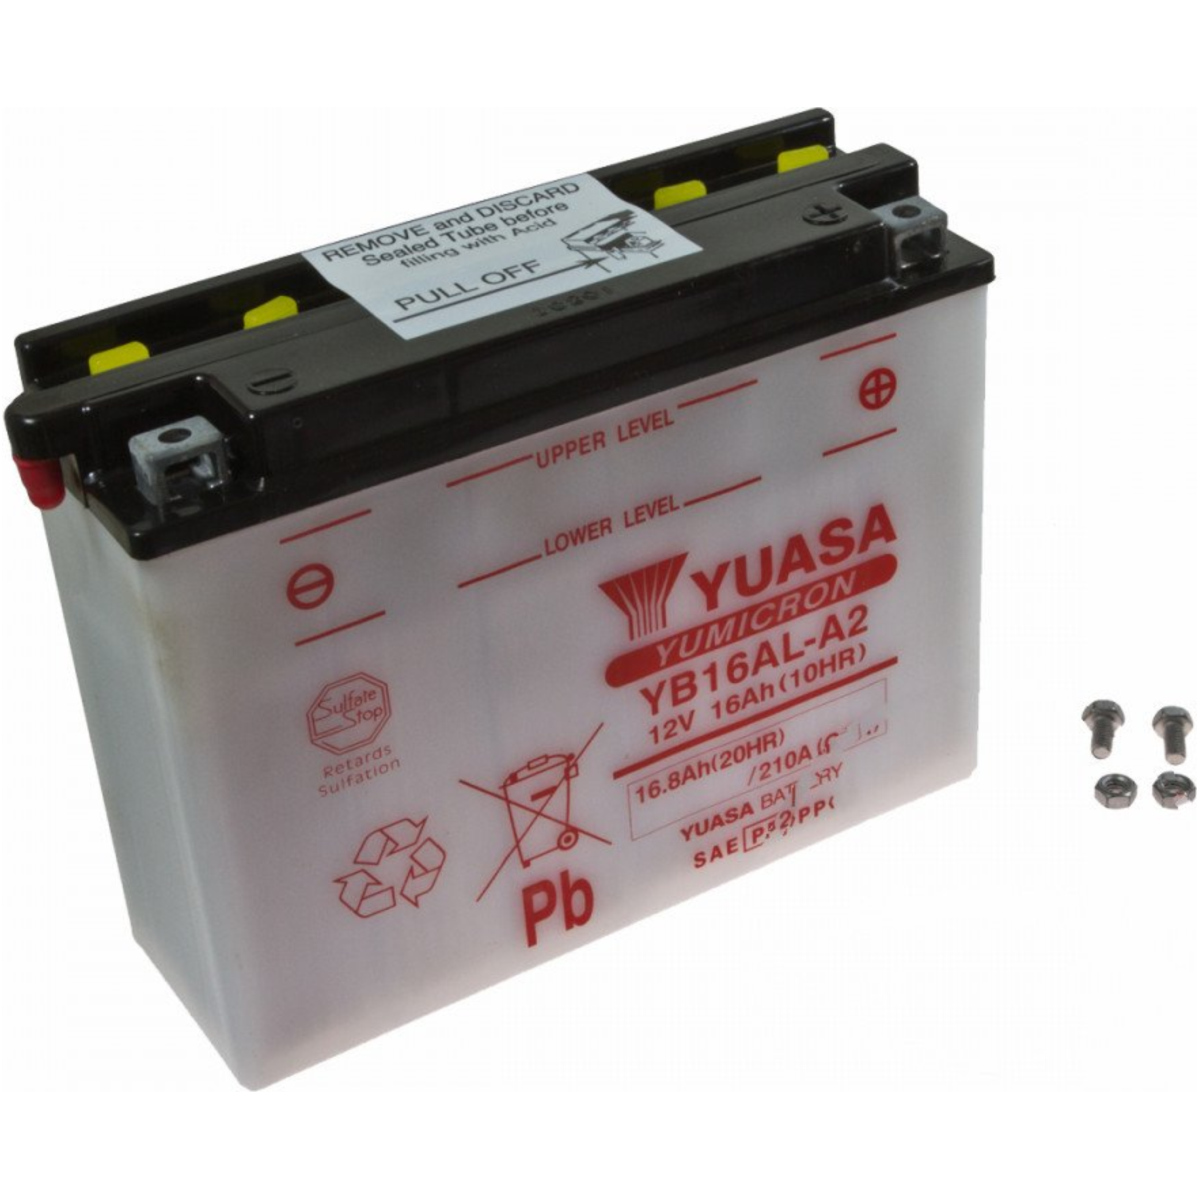 Yuasa yb16al-a2(dc) motorradbatterie yb16al-a2 von Yuasa